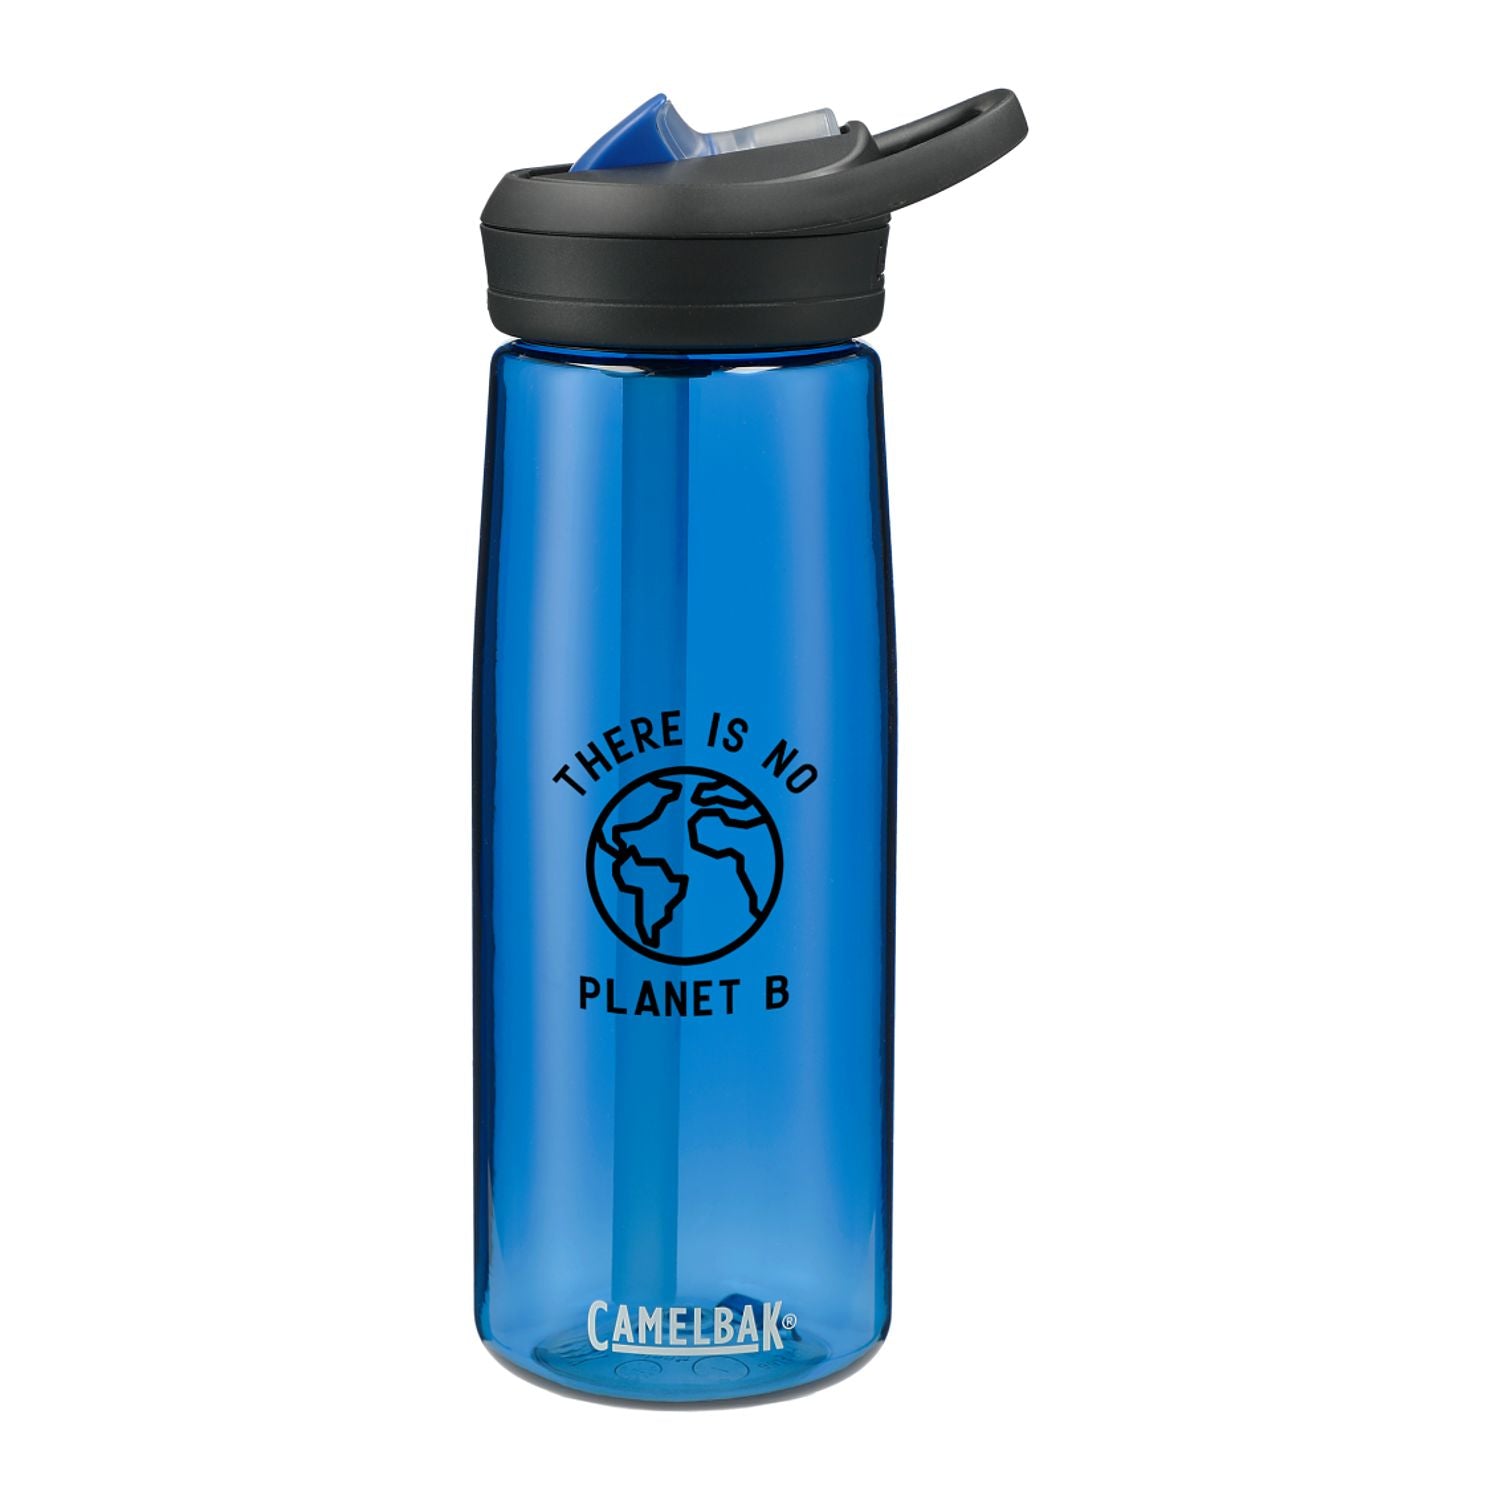 Customizable Camelbak Eddy tritan water bottle in dark blue